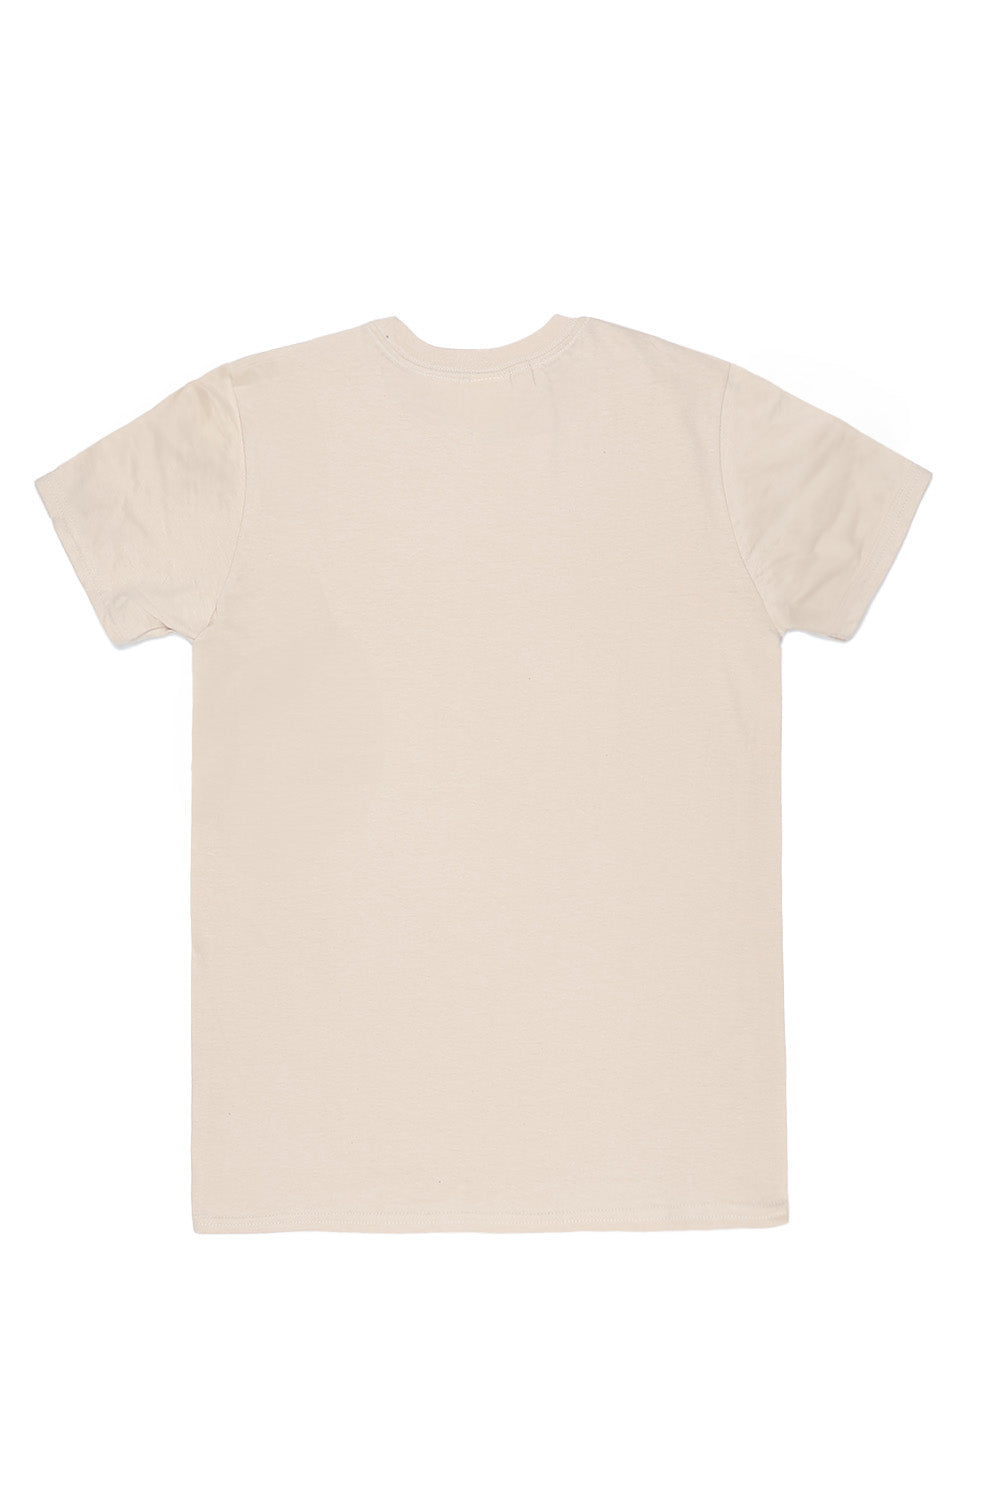 Beverly Hills T-Shirt in Sand(Custom Packs)